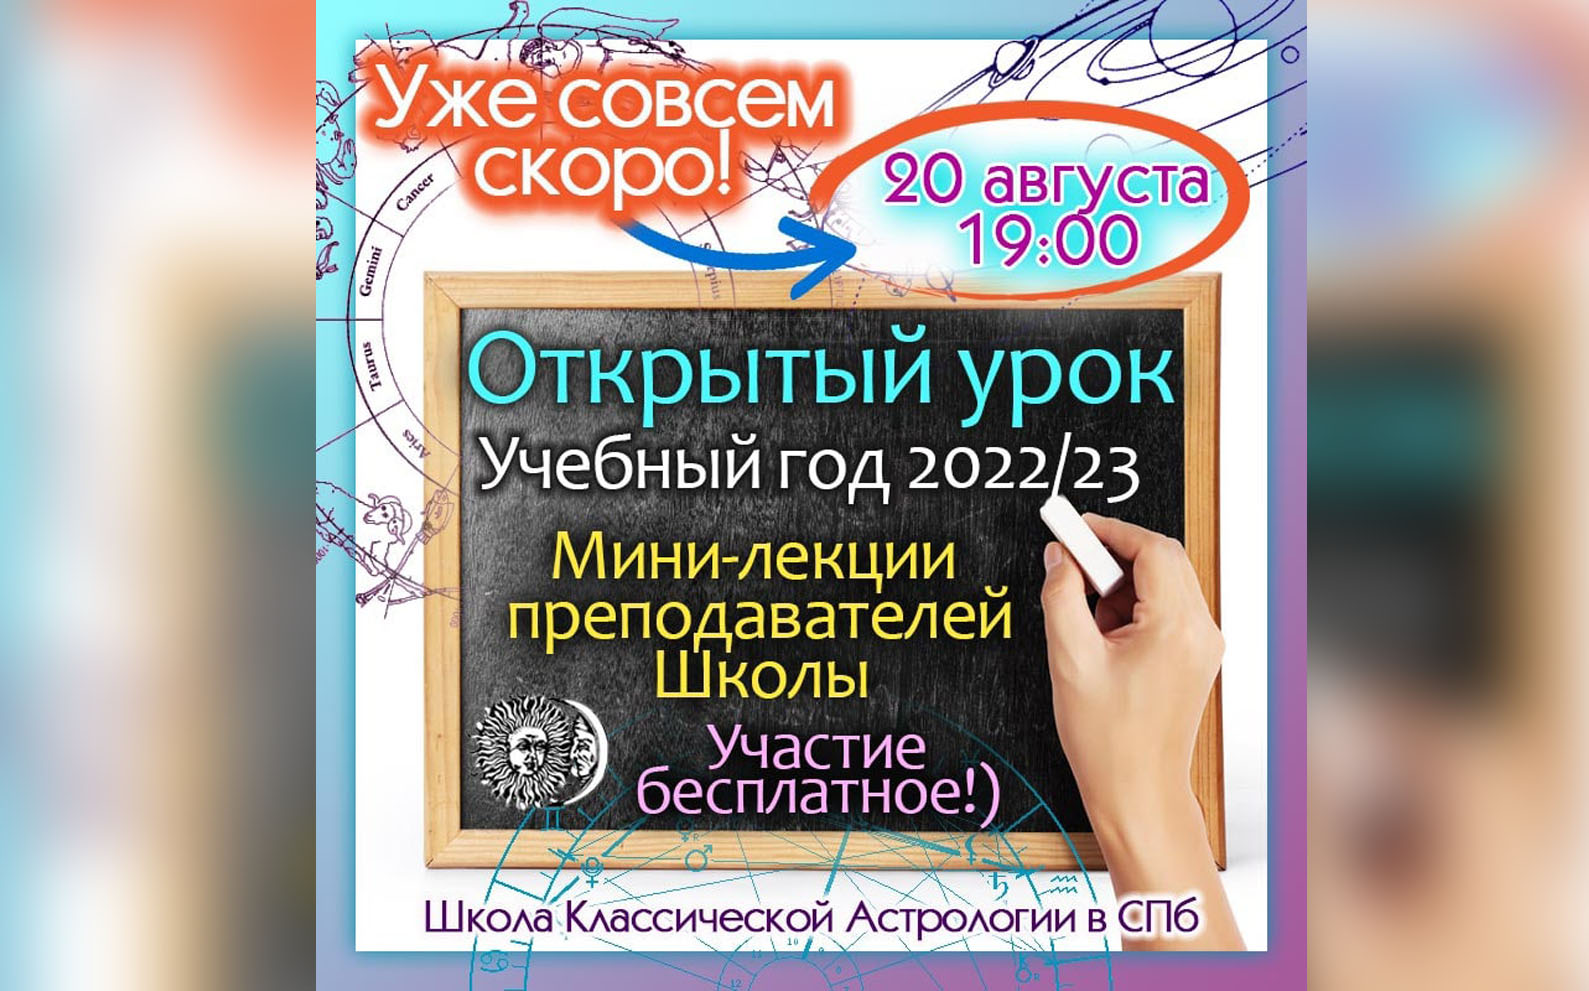 ОТКРЫТЫЙ УРОК Школы Классической Астрологии в Санкт-Петербурге